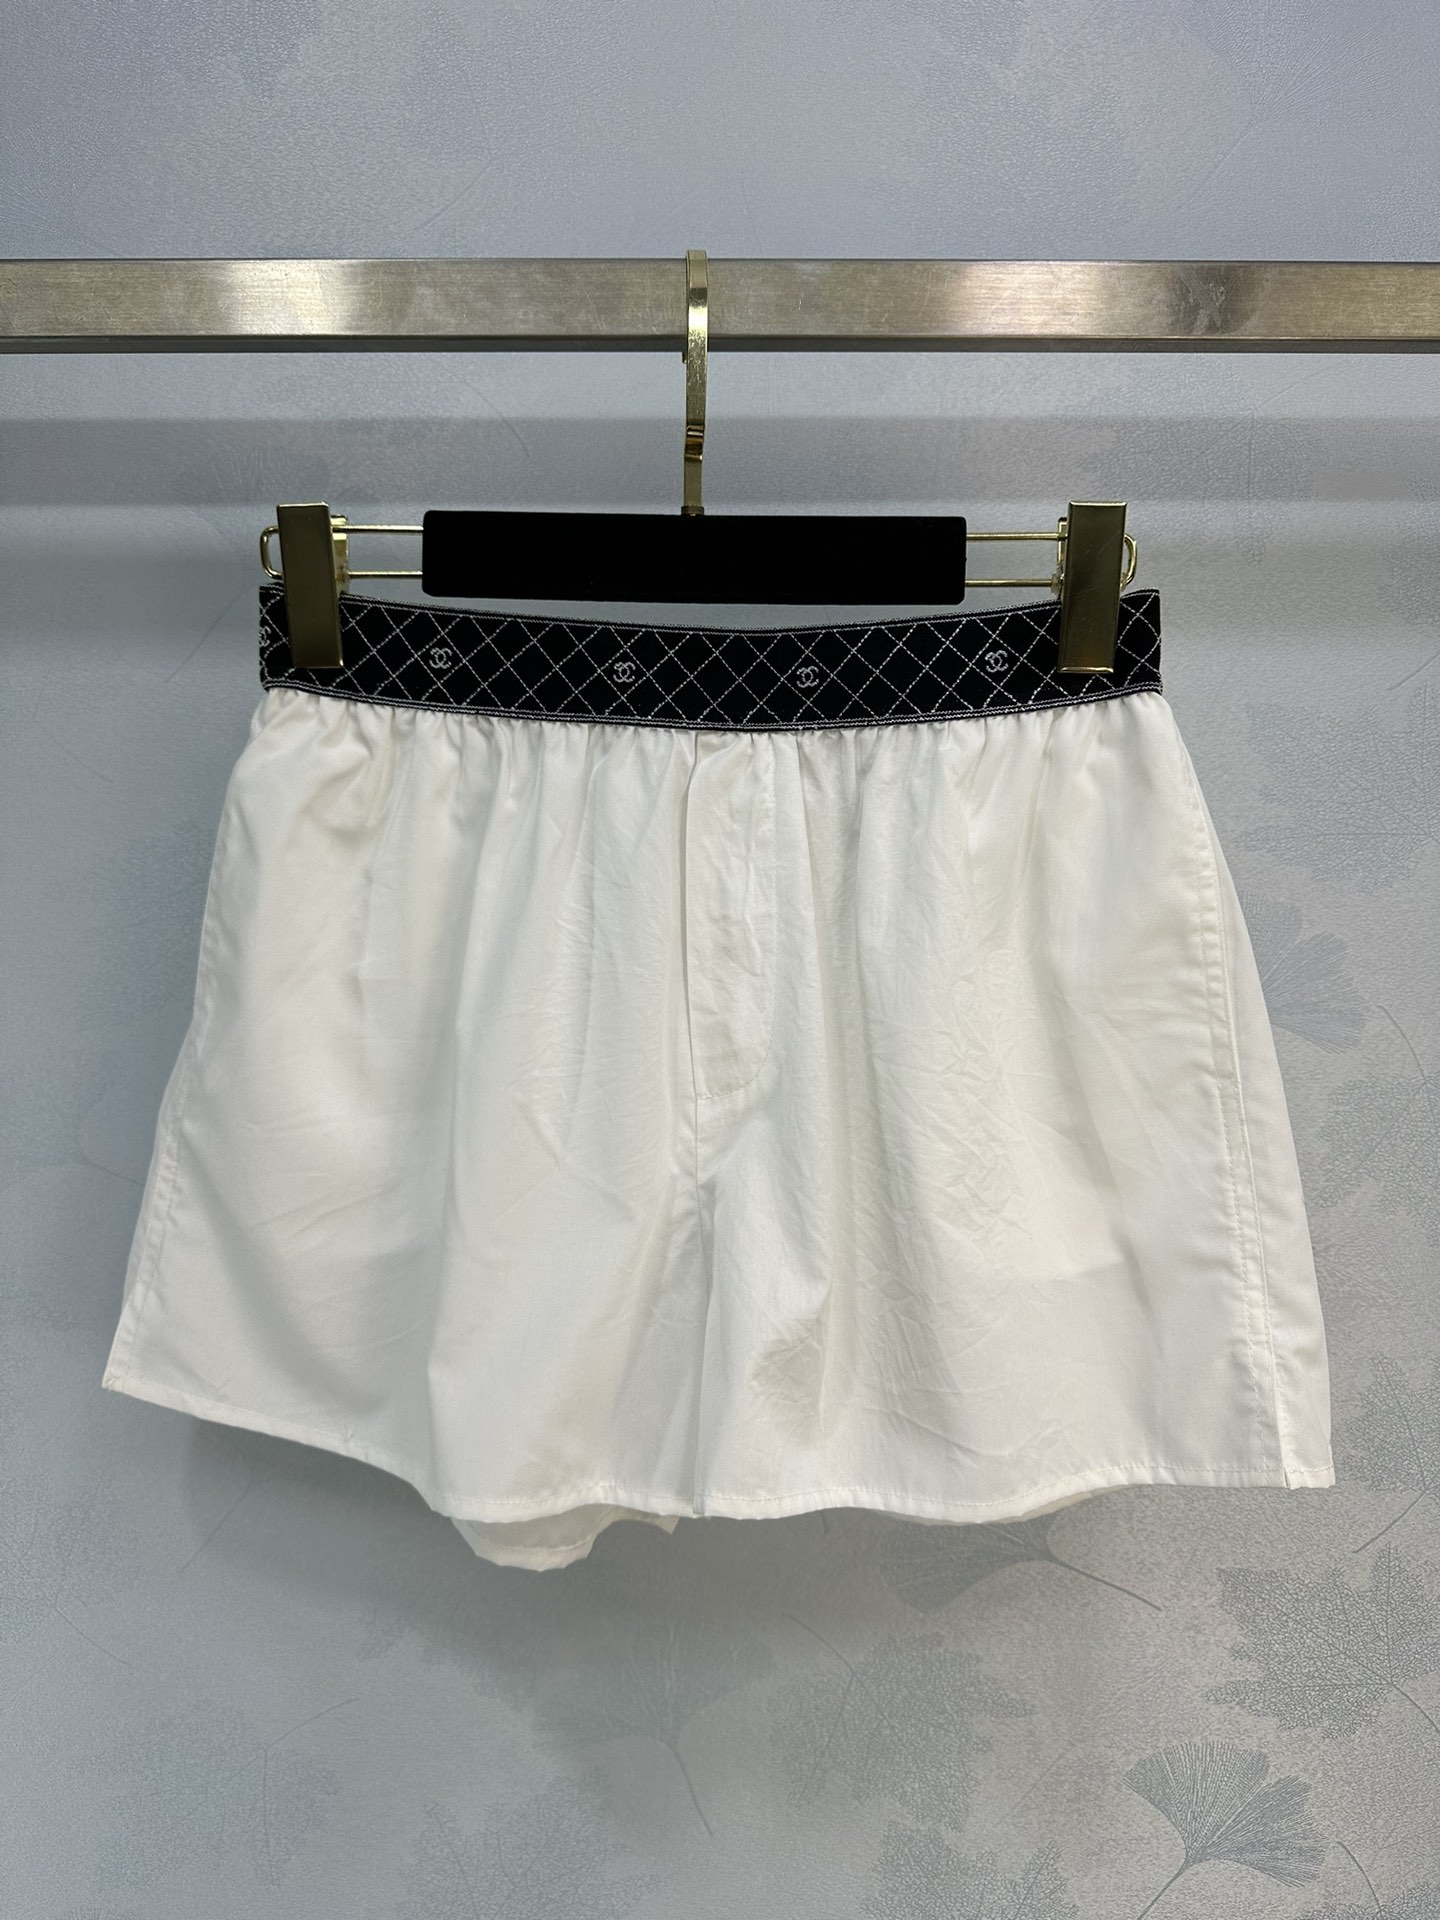 Chanel Clothing Shorts White